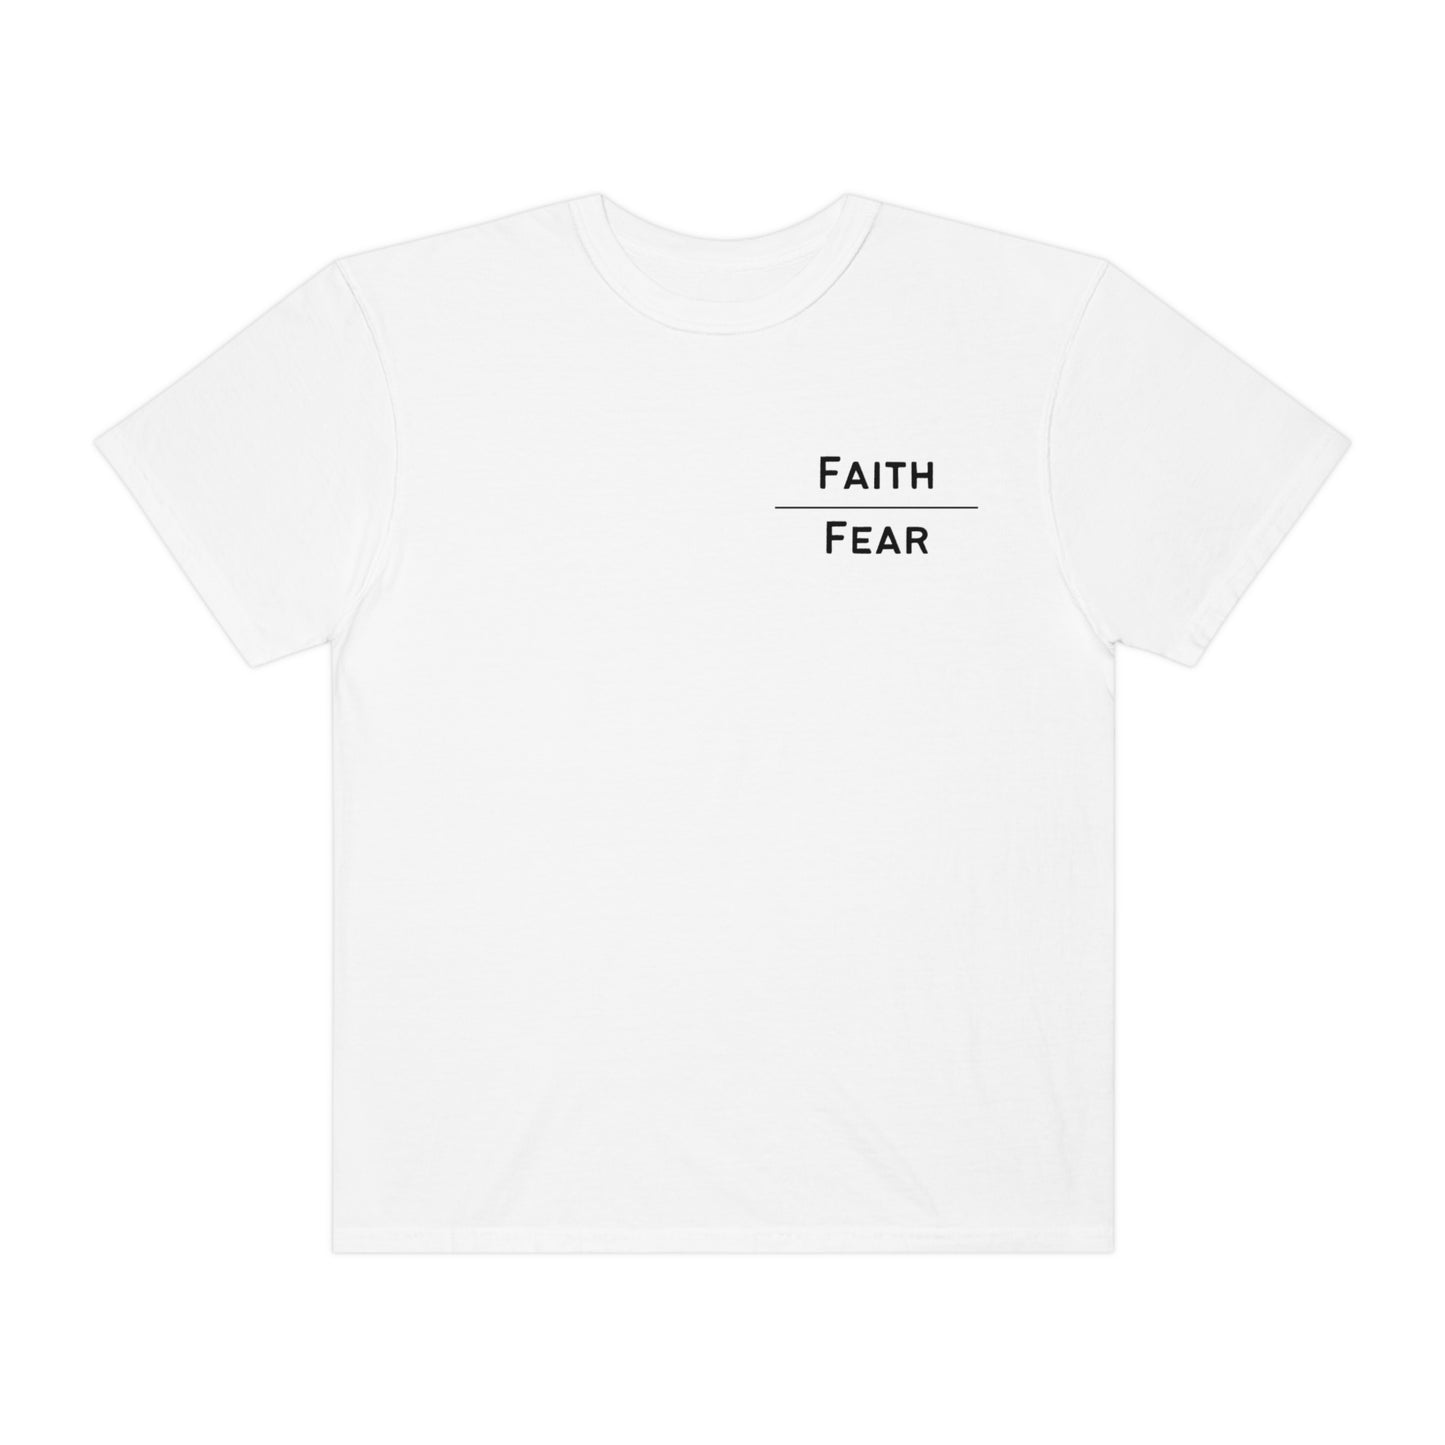 Faith over Fear T-shirt